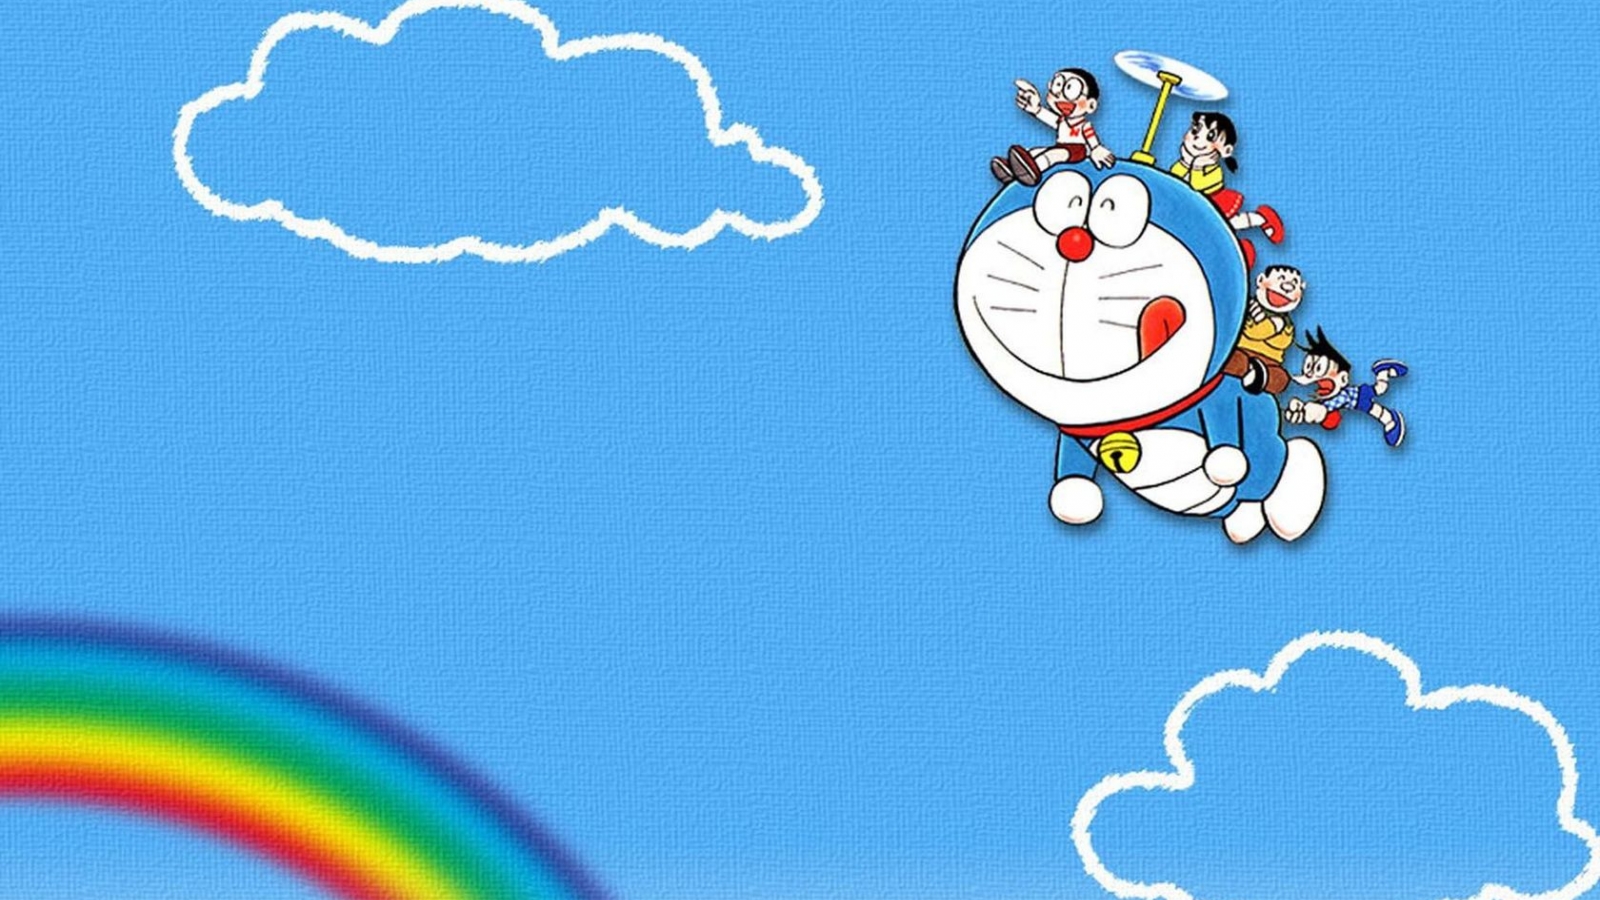 Doraemon hình nền cho trẻ em